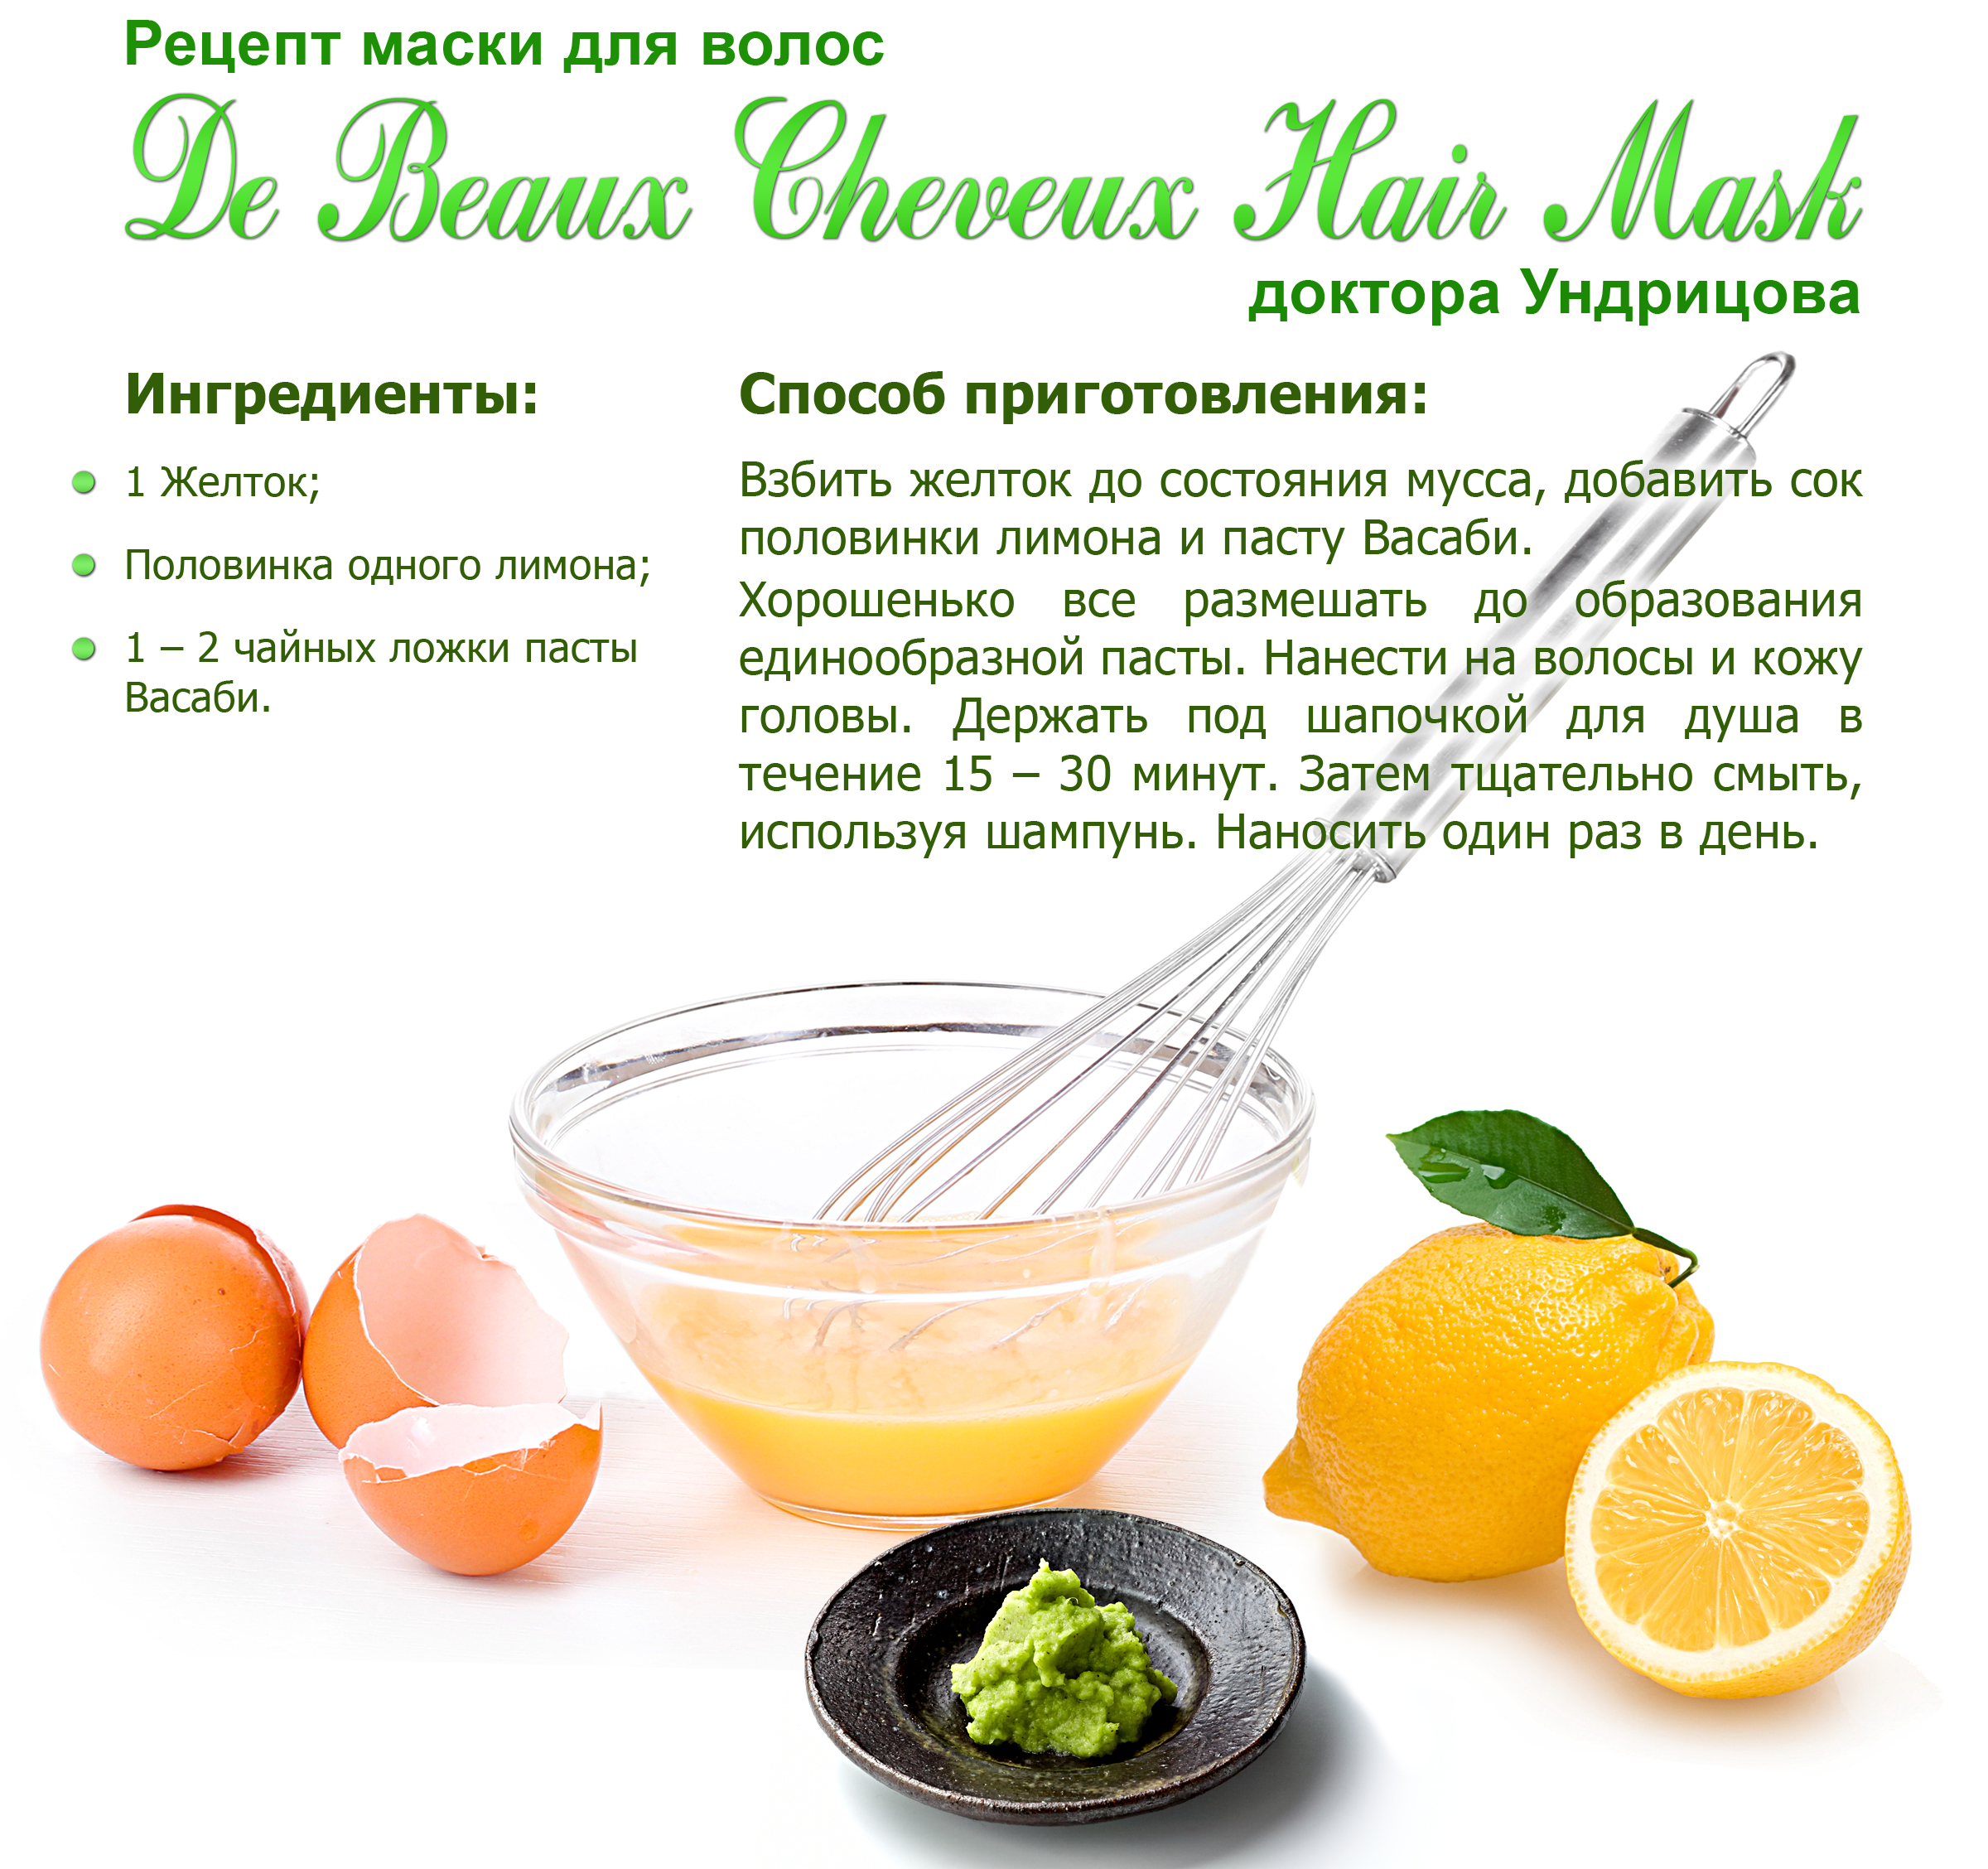 Укрепление волос в домашних условиях рецепты